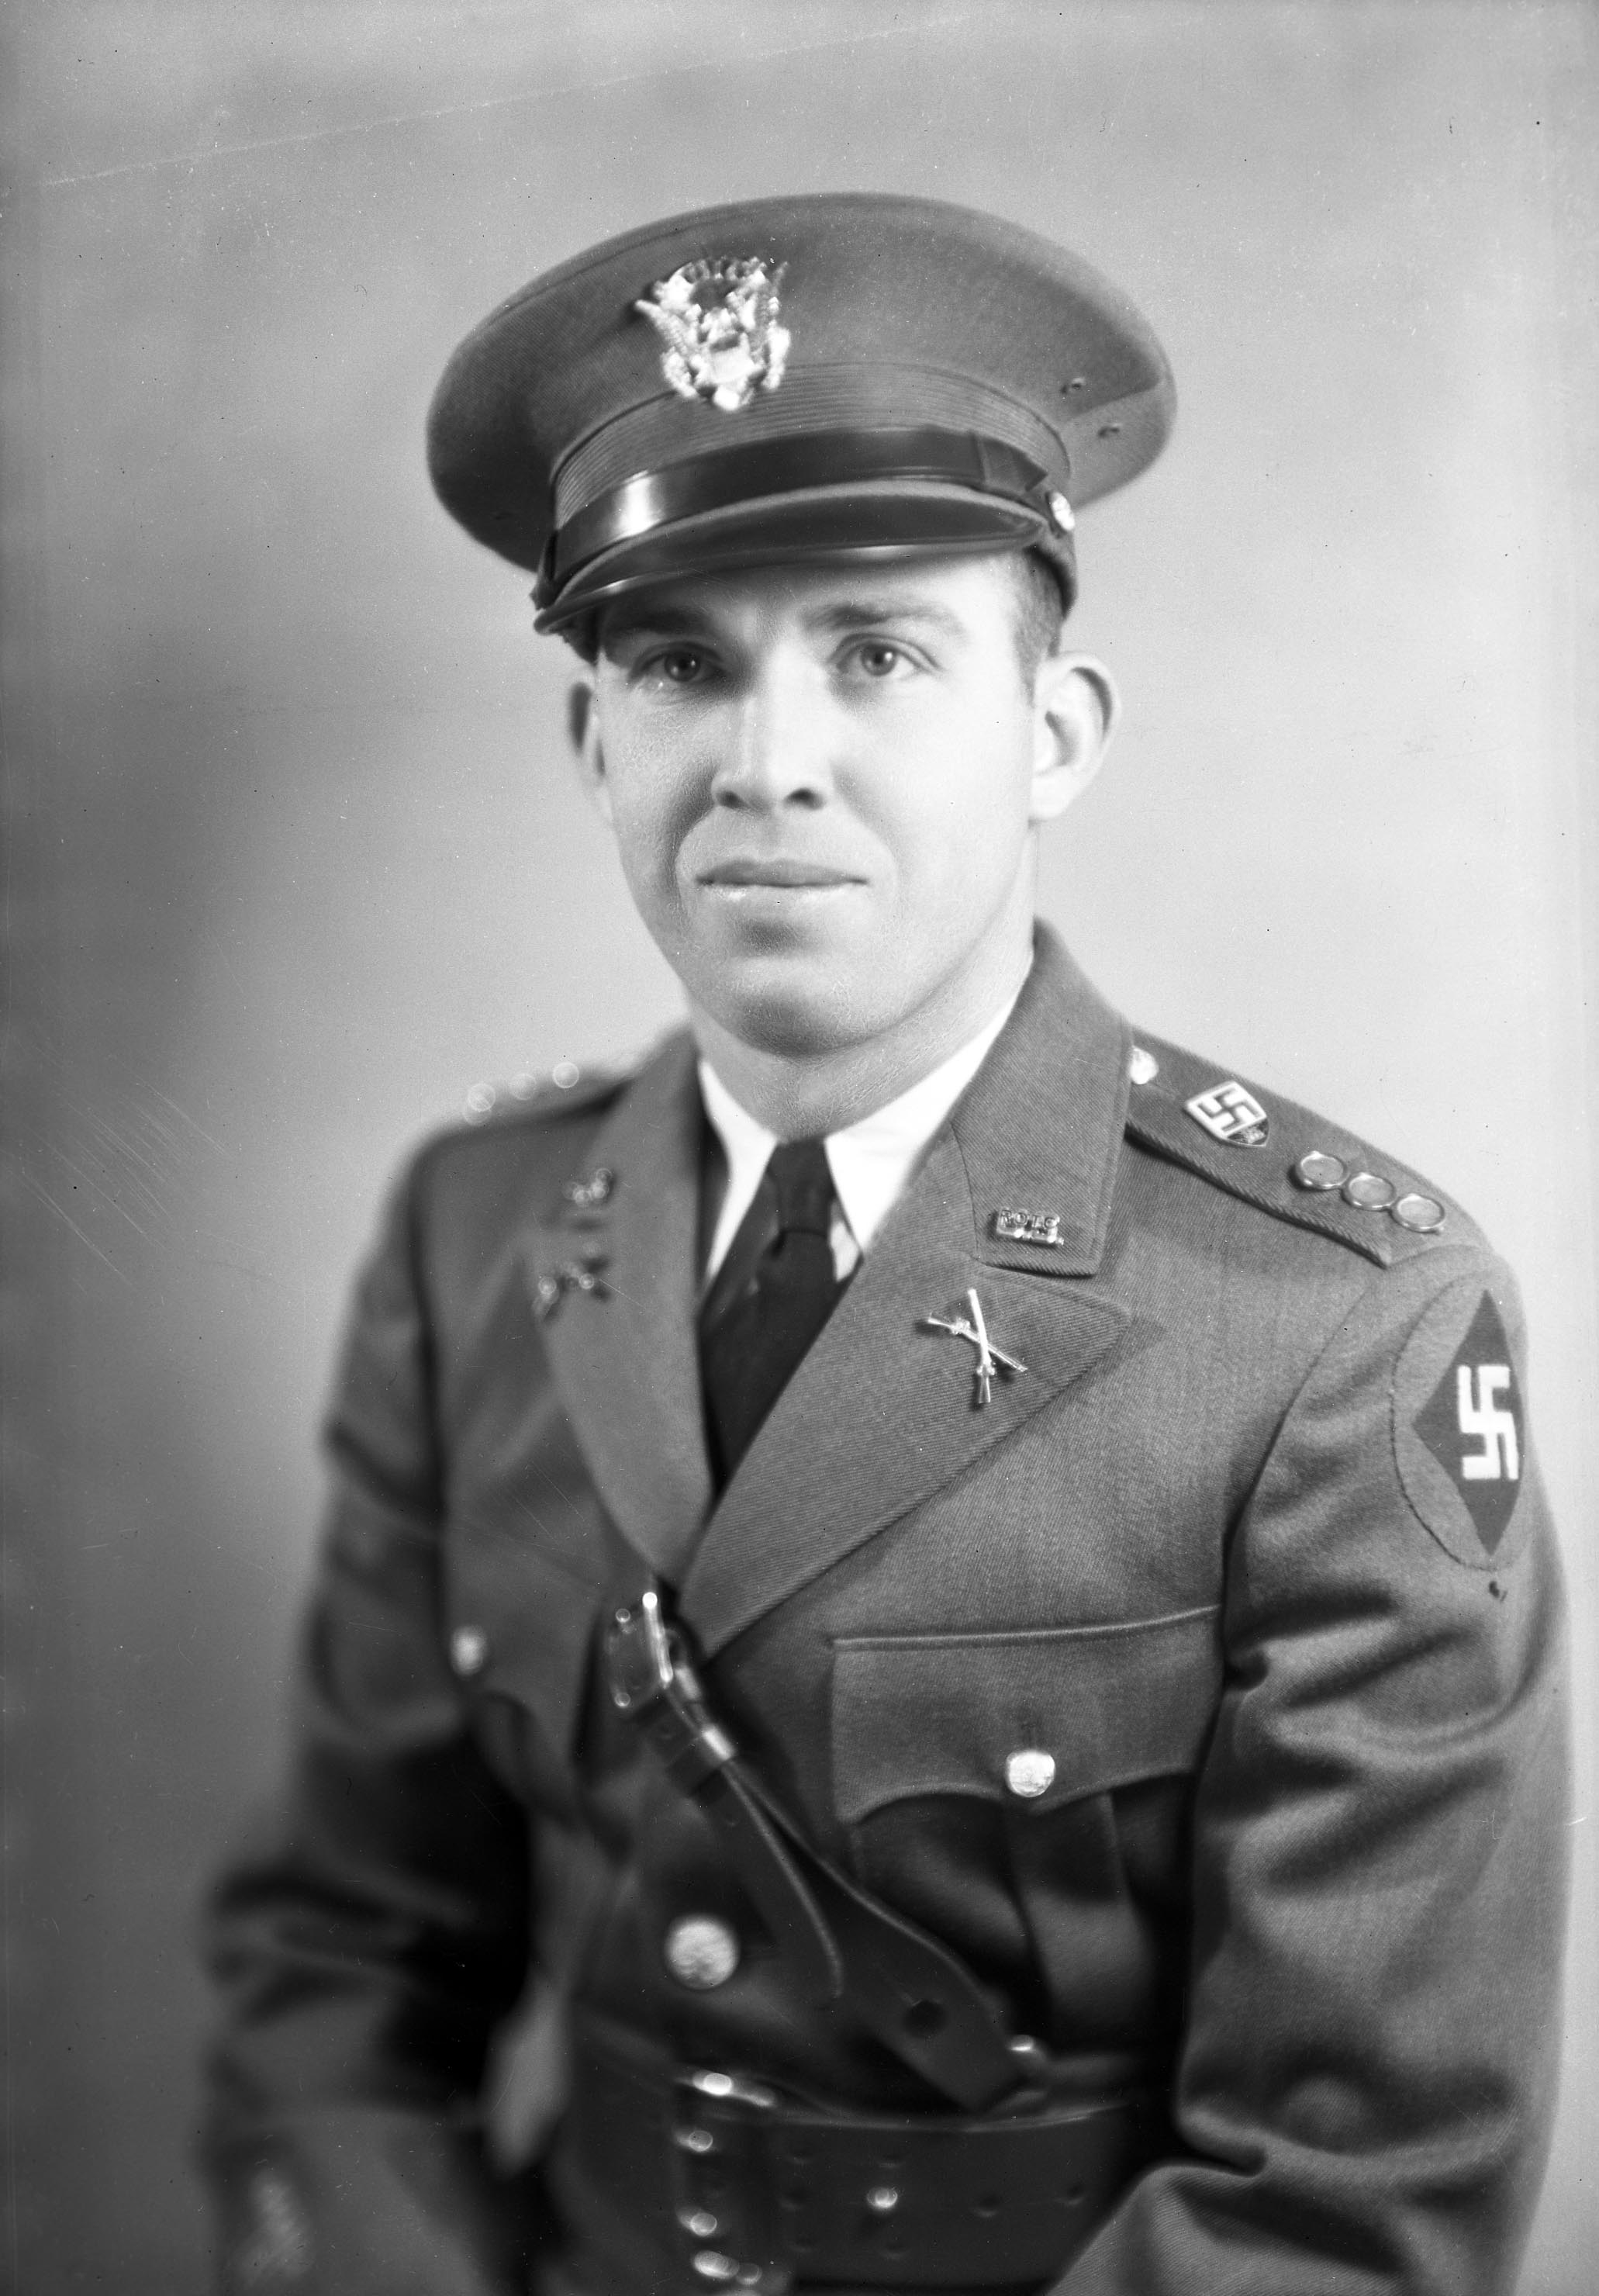 Lt. Charles Hayden Wiley